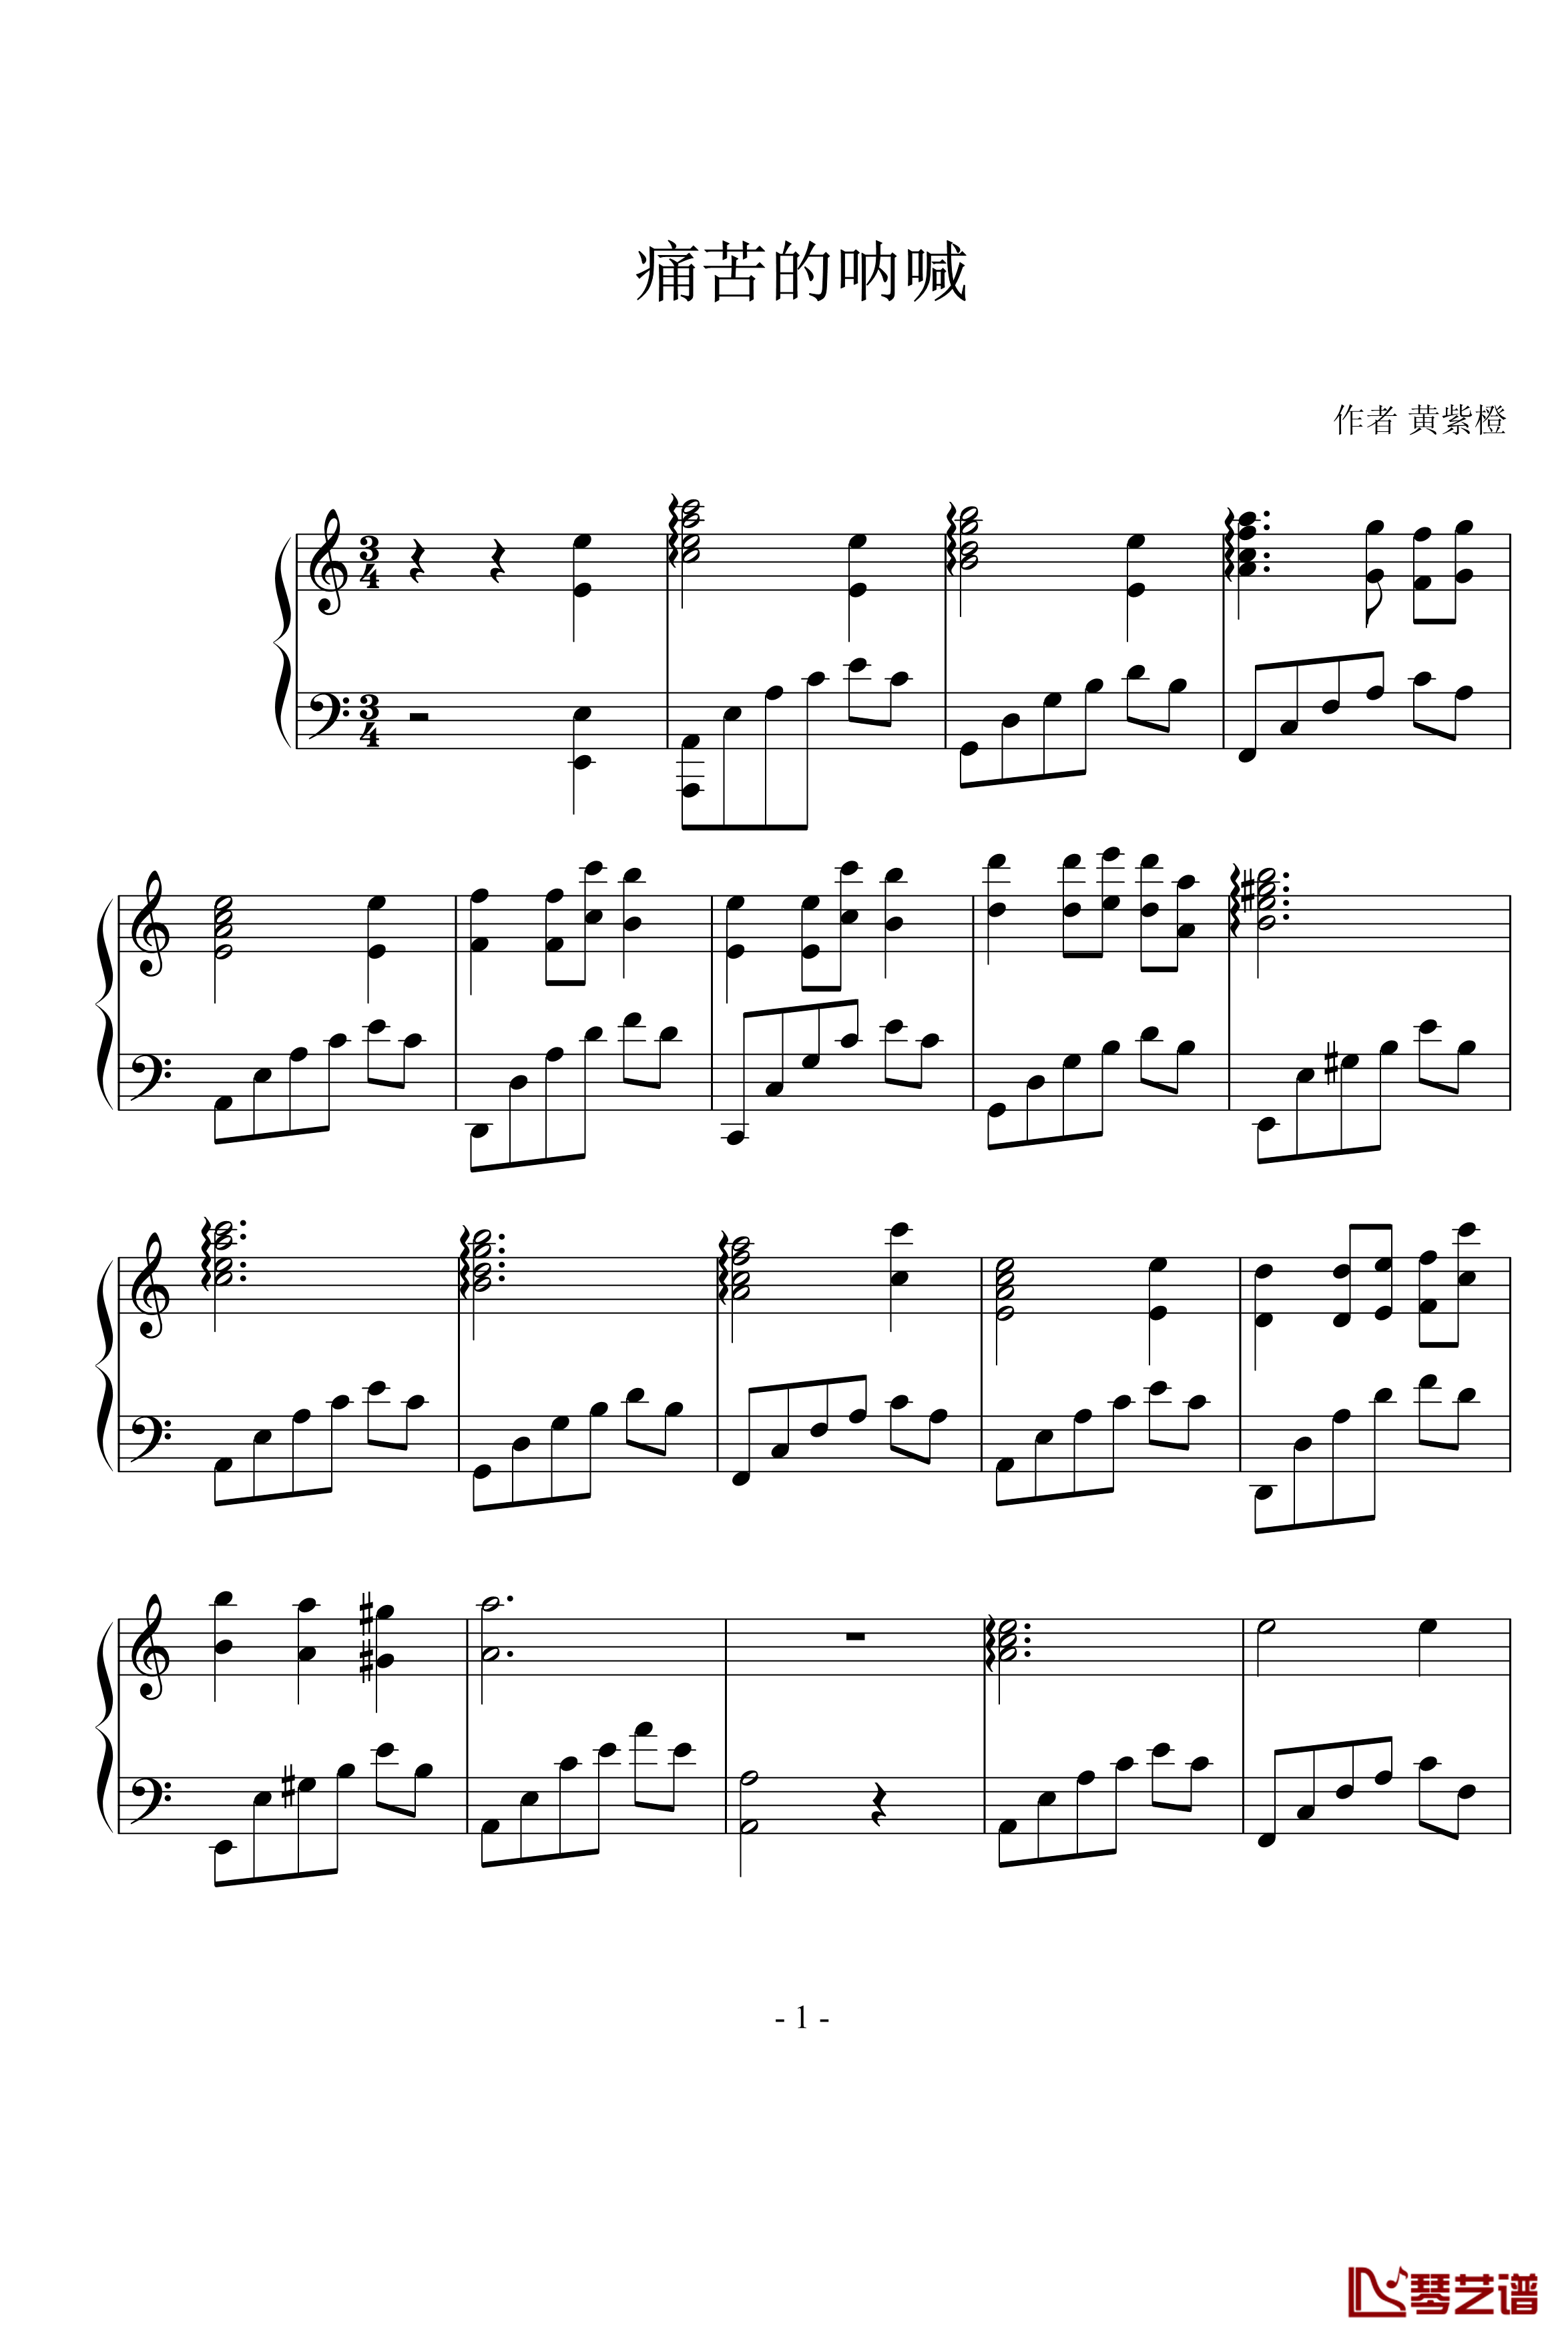 痛苦的呐喊钢琴谱-黄紫橙1